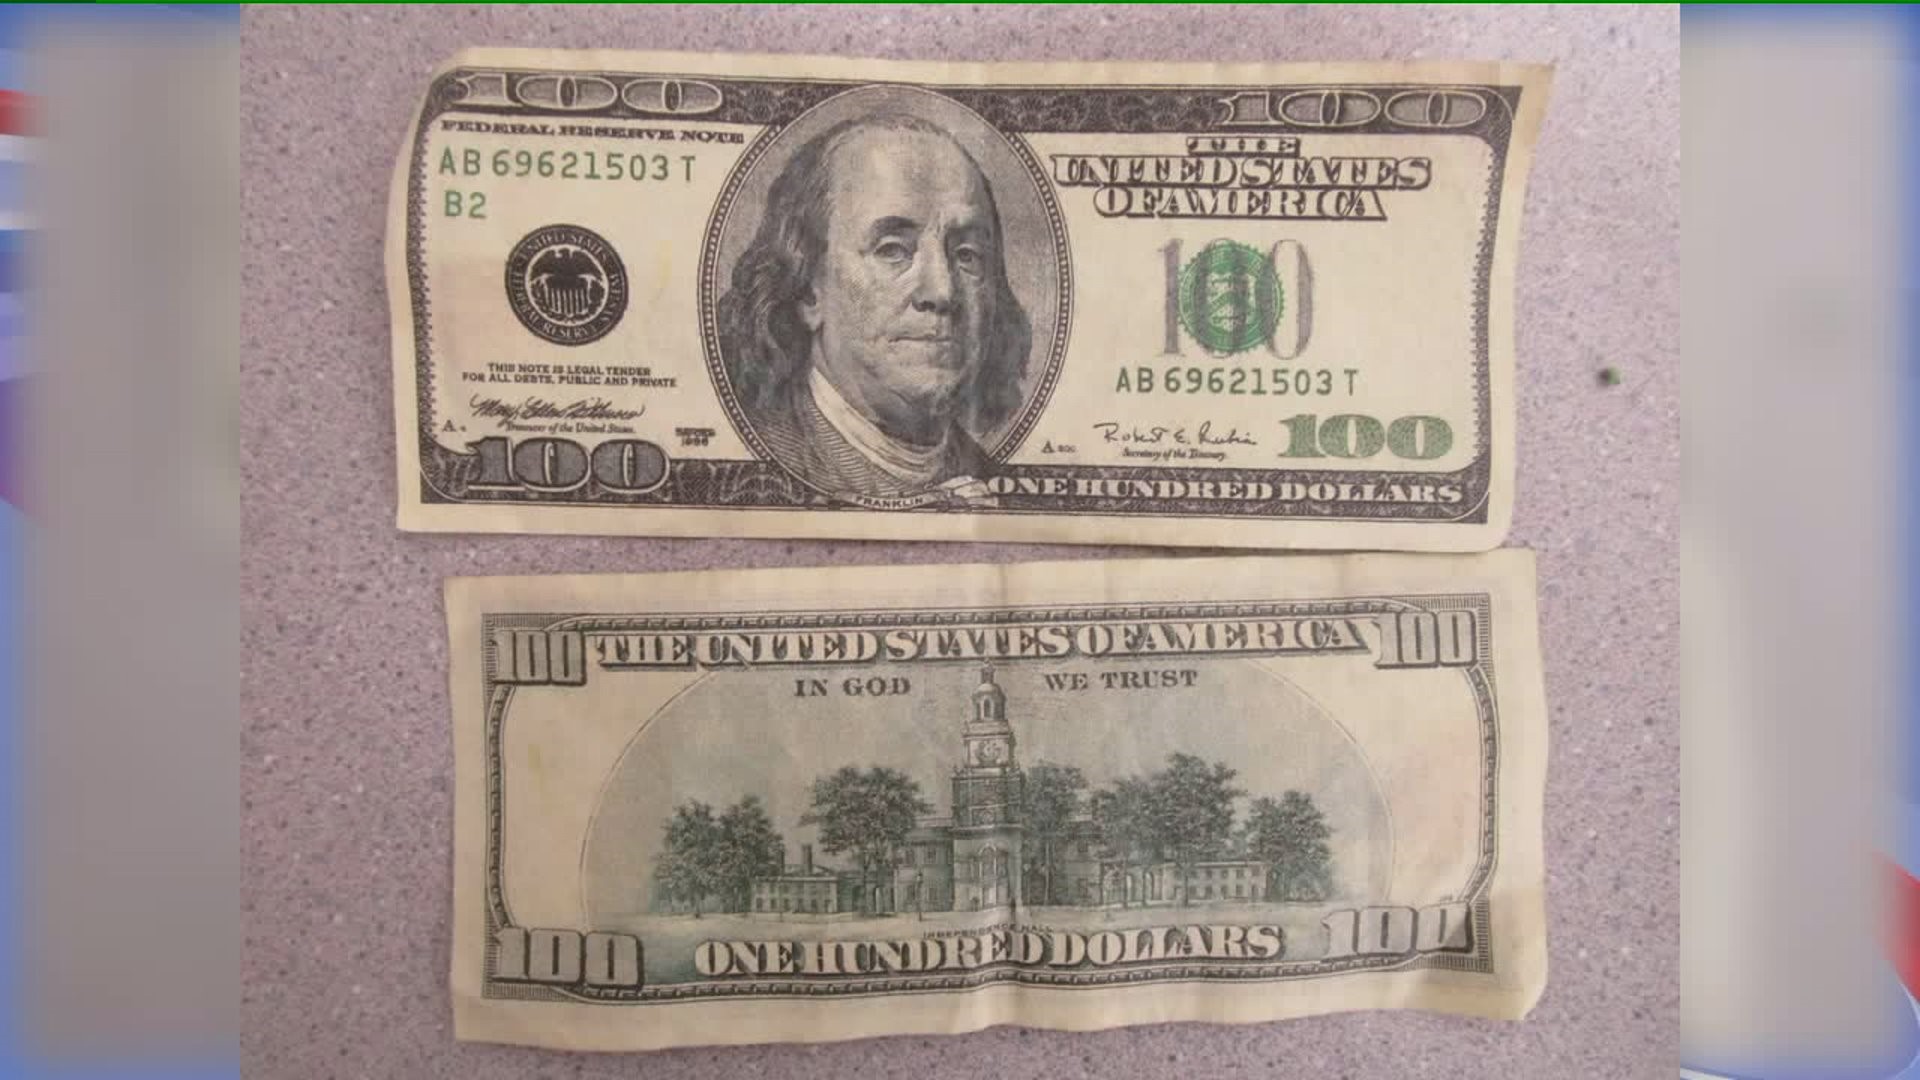 Counterfeit bills in Iowa